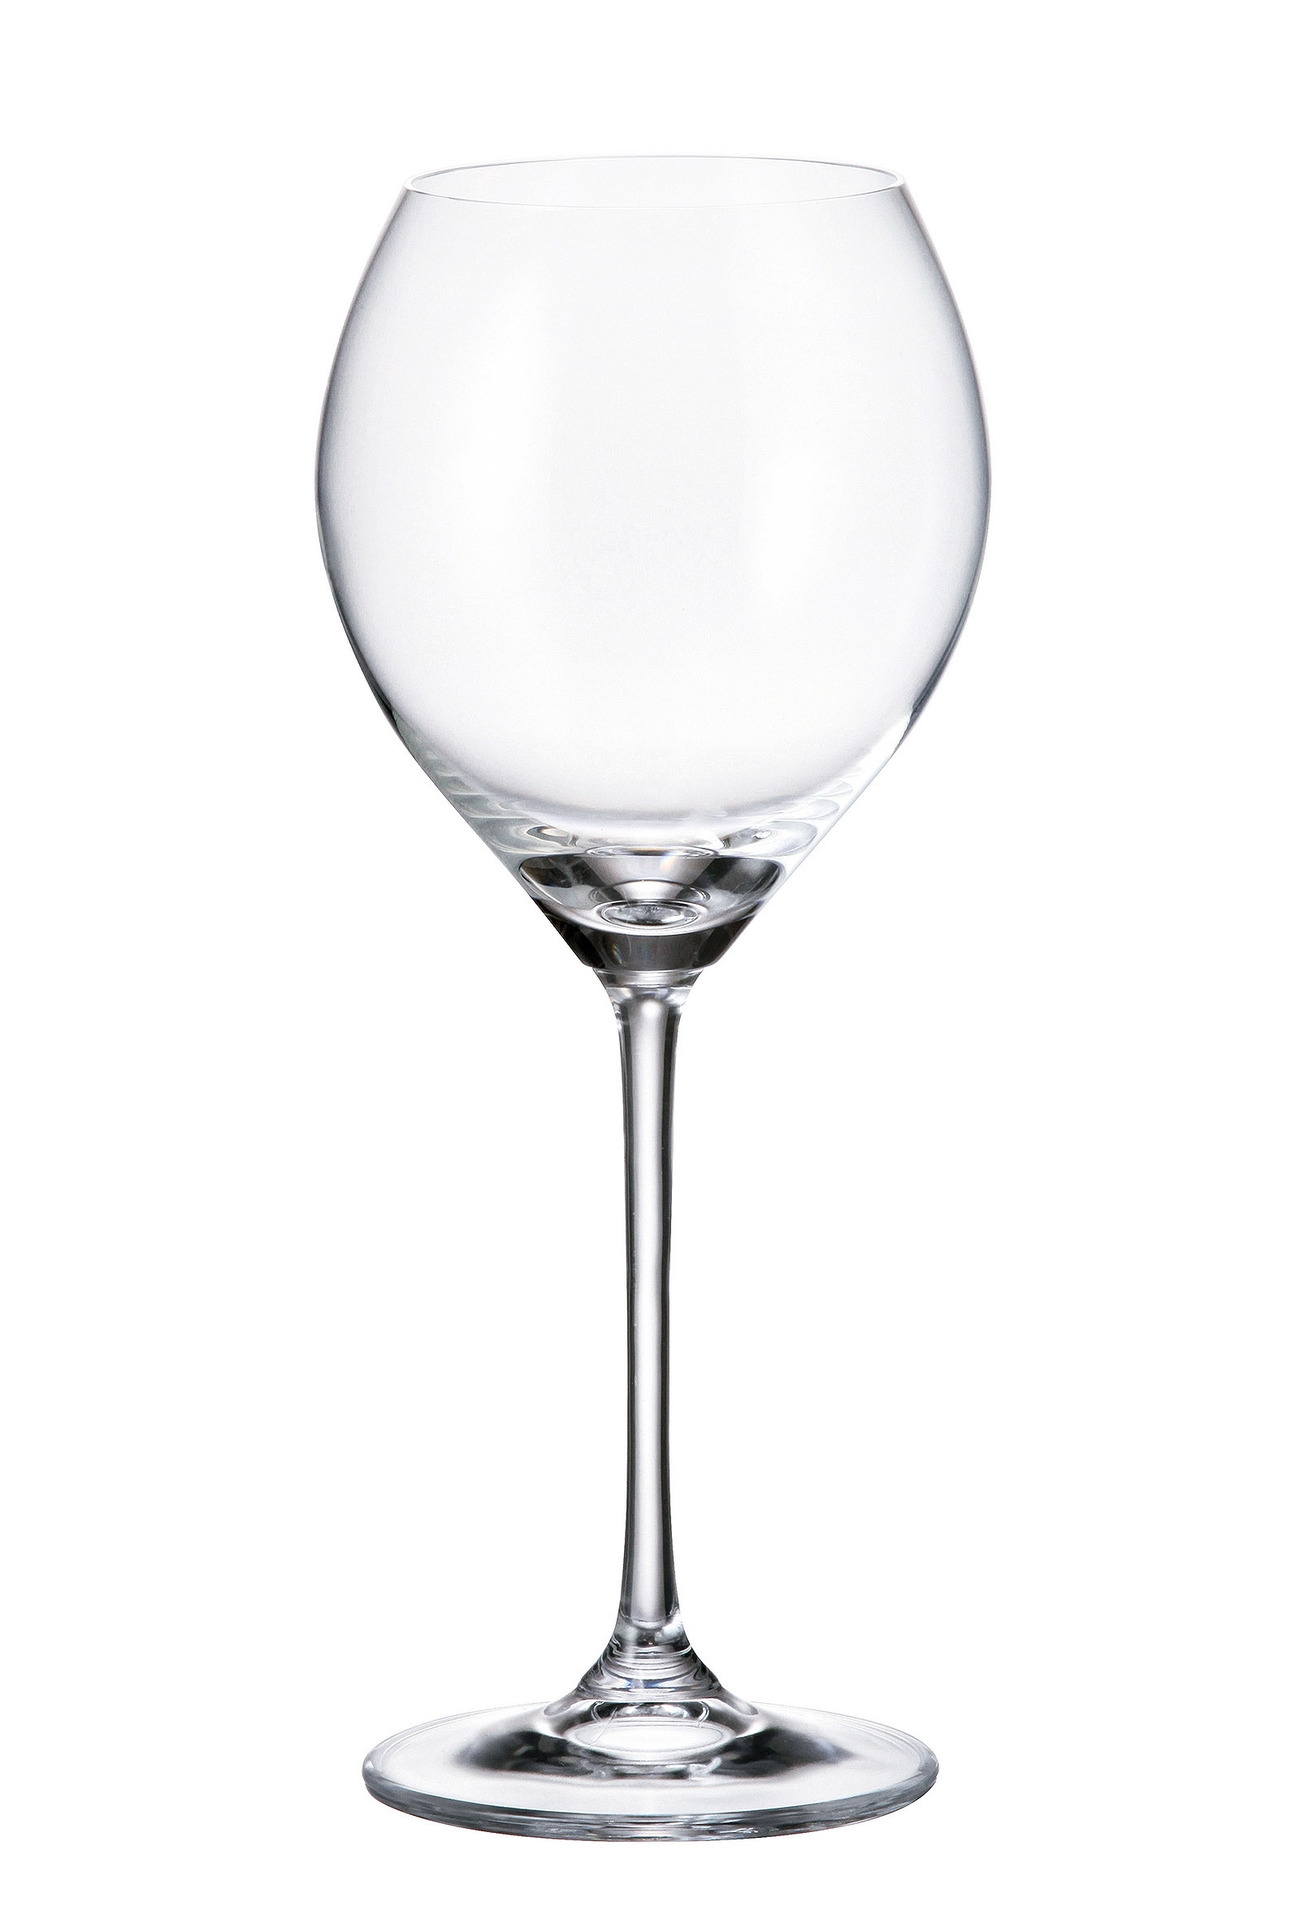 Ποτήρι Κρασιού Κρυστάλλινο Bohemia Carduelis 390ml CTB01F06390 (Σετ 6 Τεμάχια) (Υλικό: Κρύσταλλο, Χρώμα: Διάφανο , Μέγεθος: Κολωνάτο) – Κρύσταλλα Βοημίας – CTB01F06390